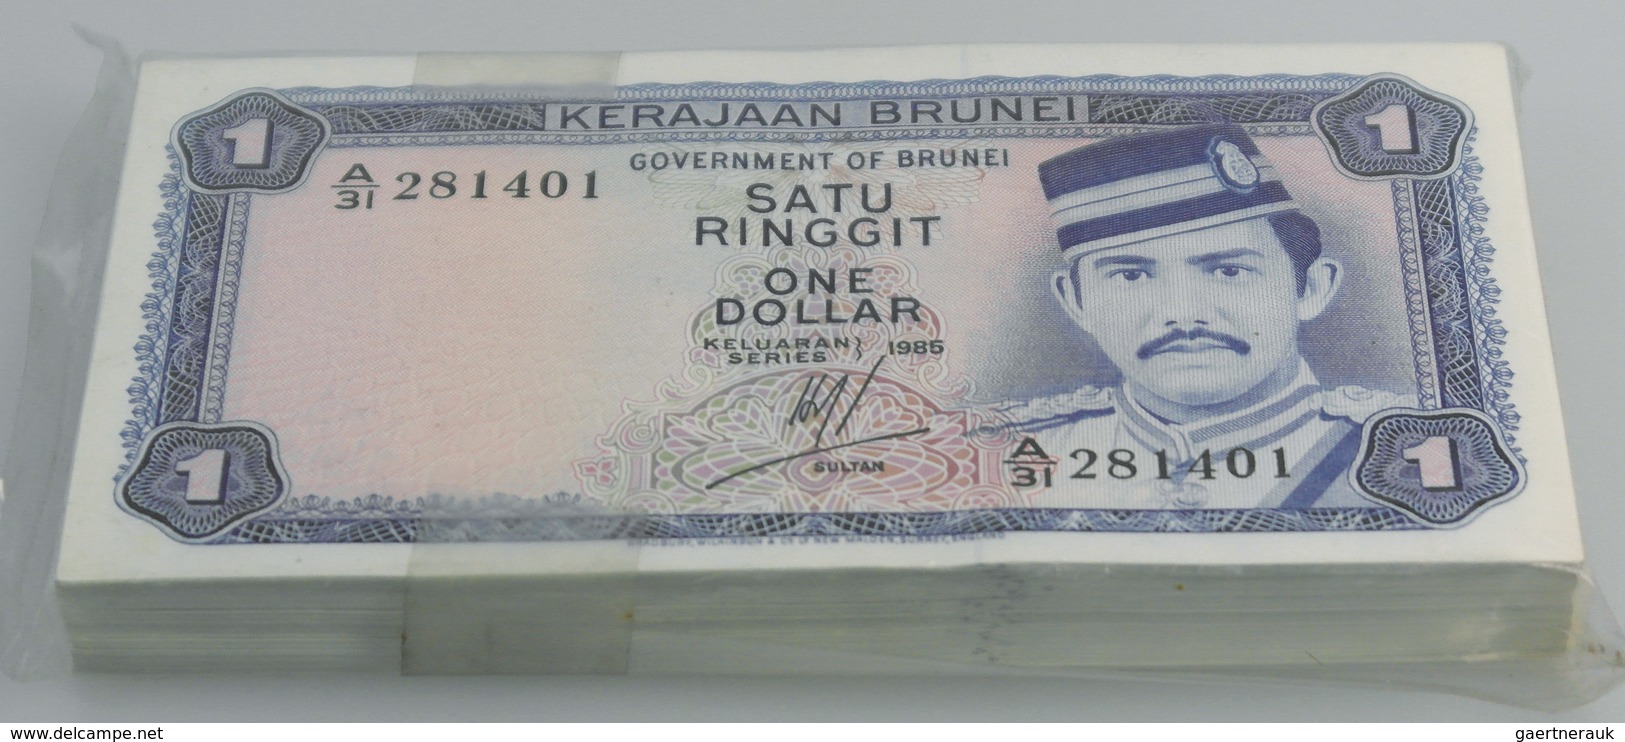 02732 Brunei: Bundle With 100 Pcs. Brunei 1 Ringgit 1985, P.6c In UNC - Brunei